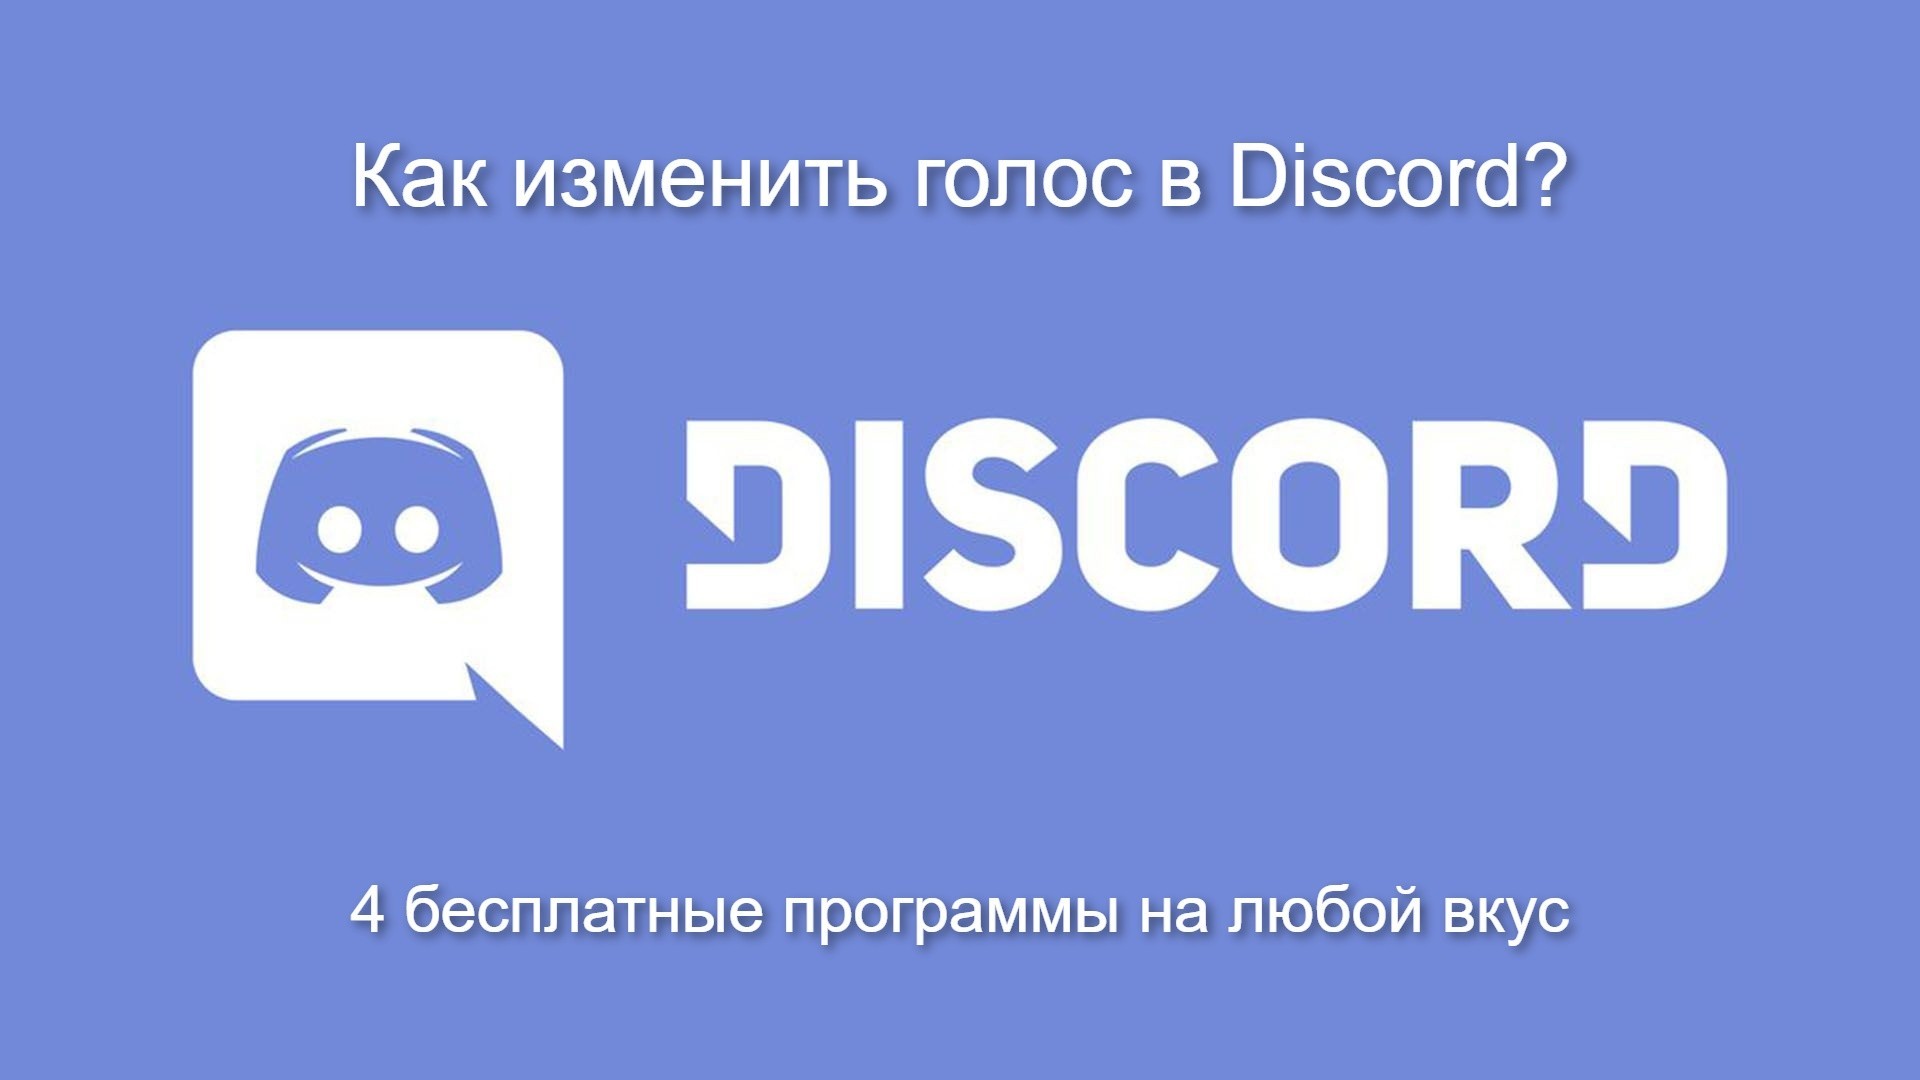 4 программы для изменения голоса в Discord | ichip.ru